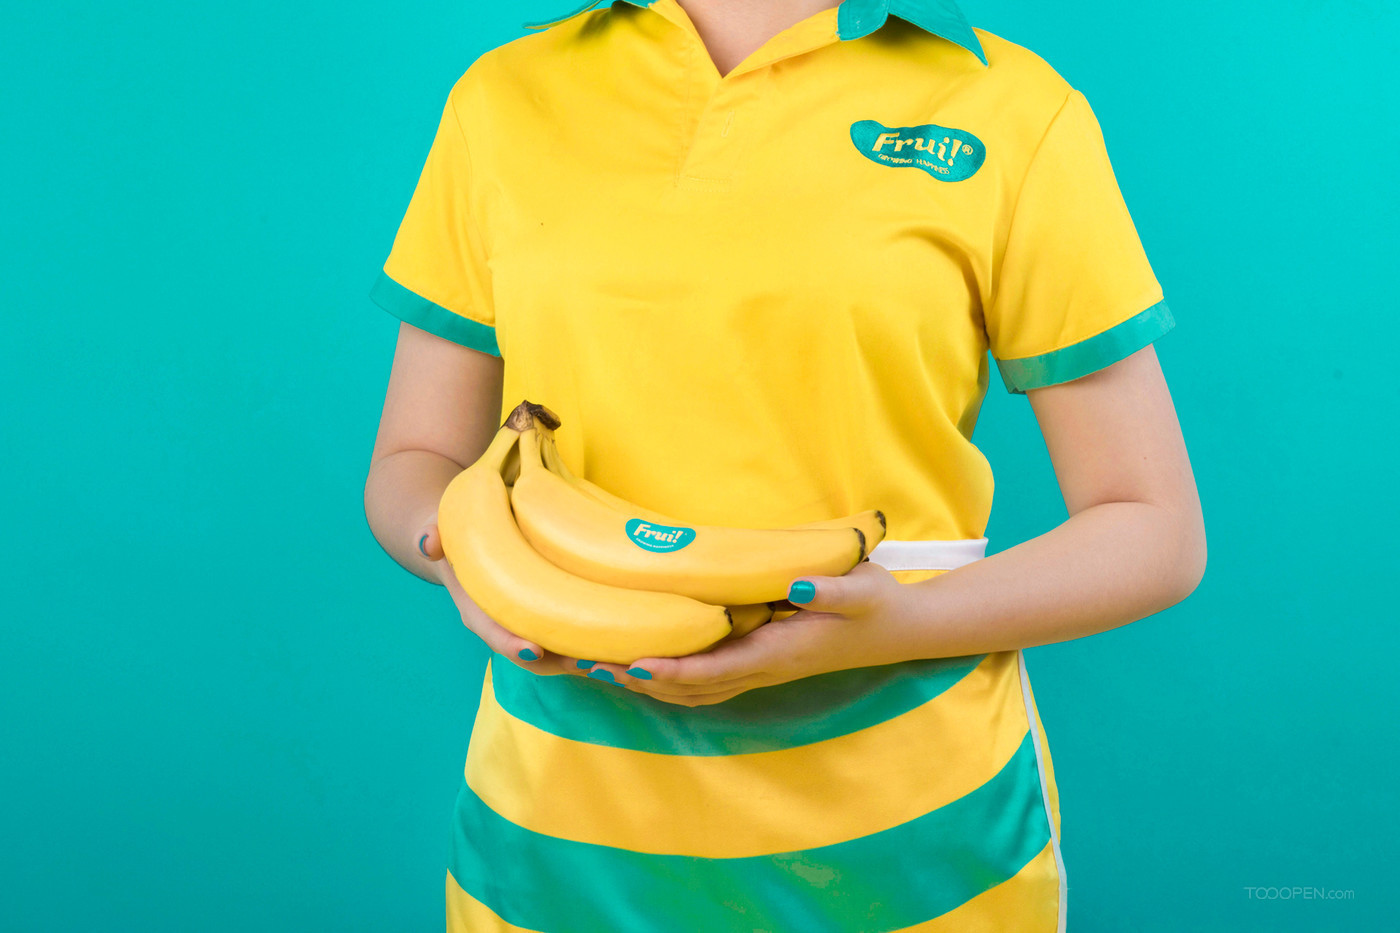 香蕉自由新鲜水果食品包装设计作品欣赏-14